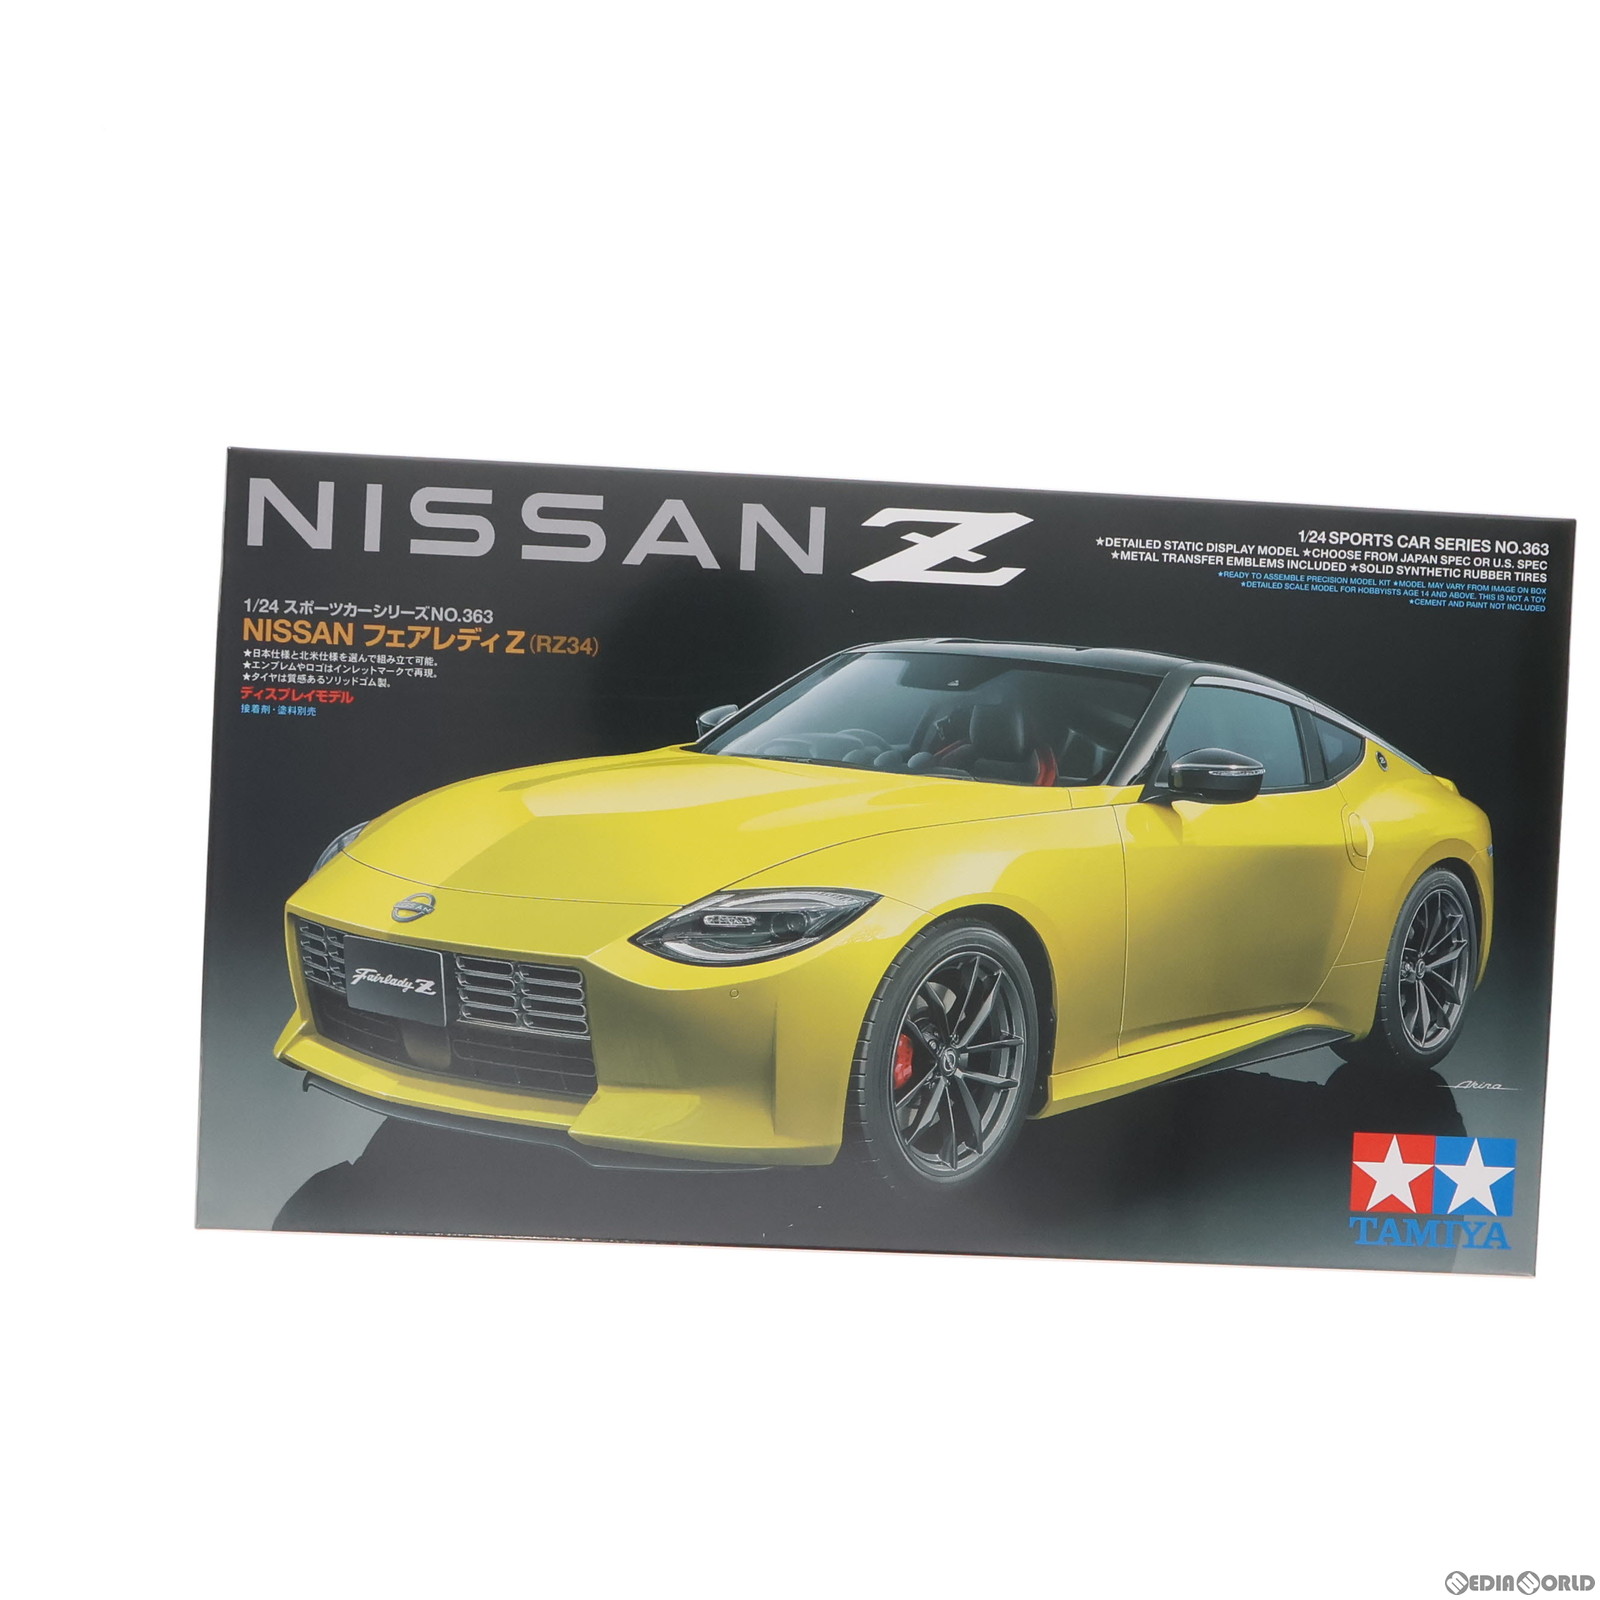 【中古即納】[PTM]スポーツカーシリーズ No.363 1/24 NISSAN フェアレディZ(RZ34) ディスプレイモデル プラモデル(24363) タミヤ(2022123